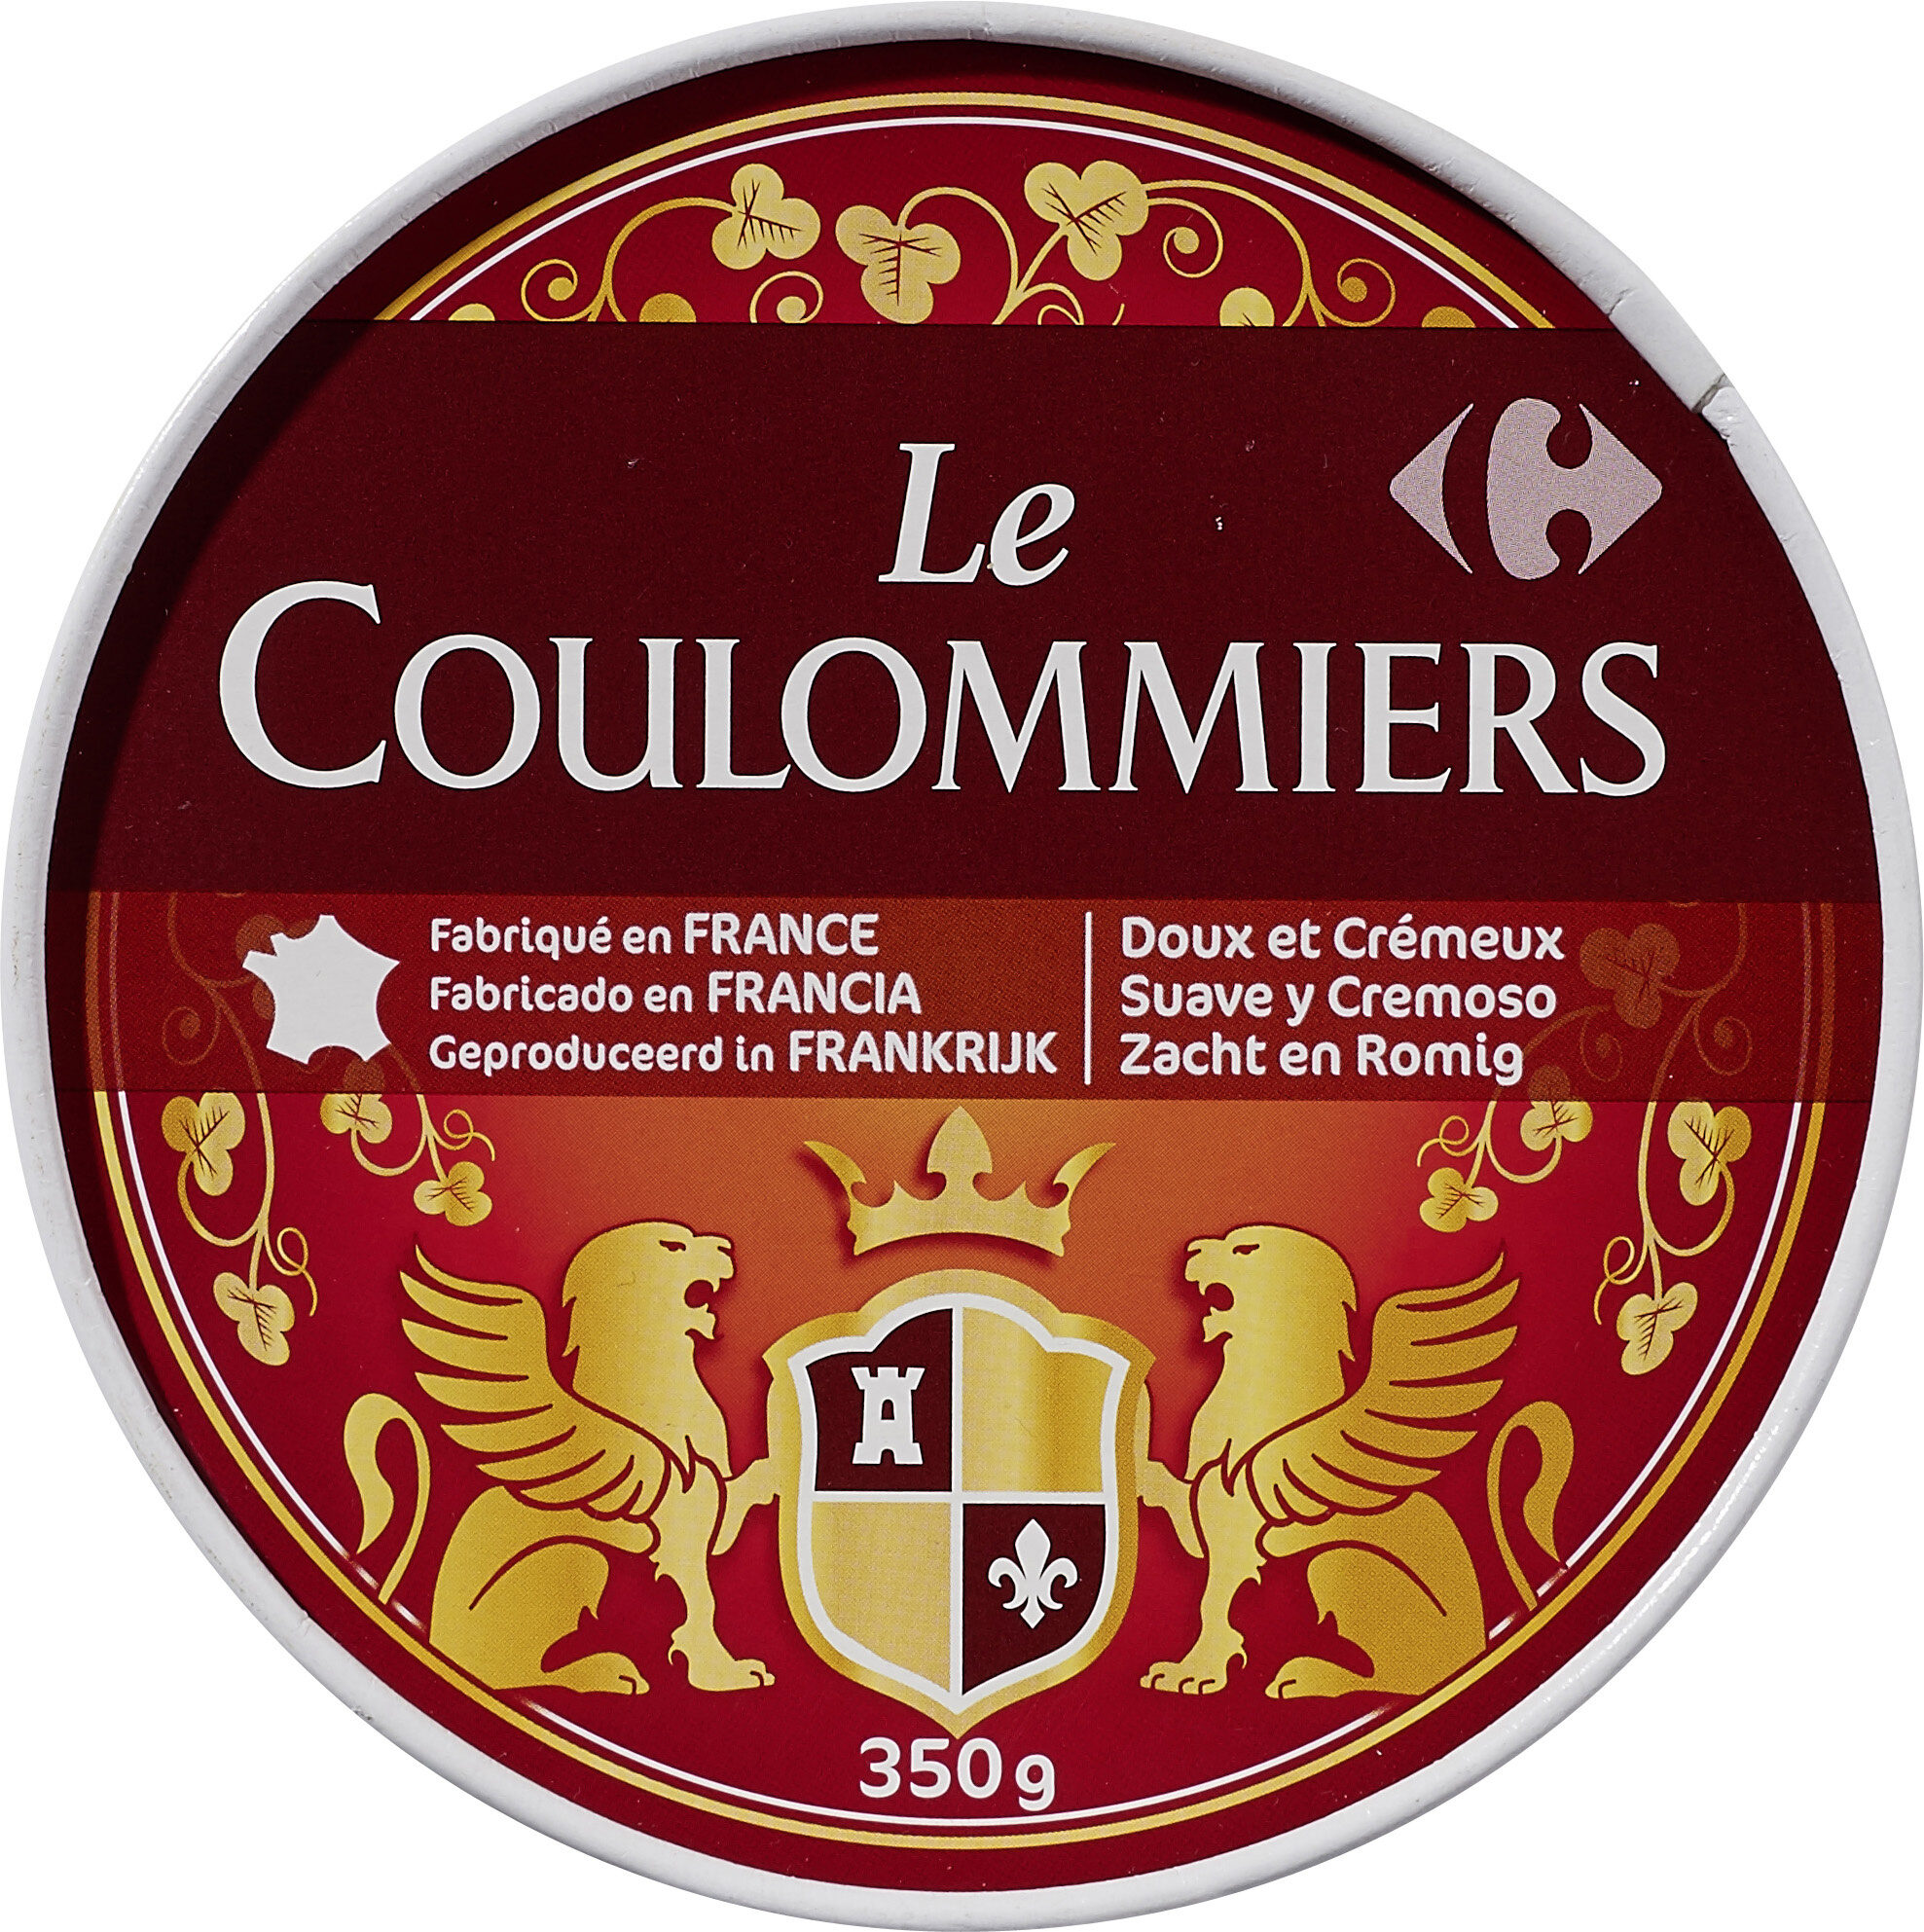 Le Coulommiers - Produkt - fr